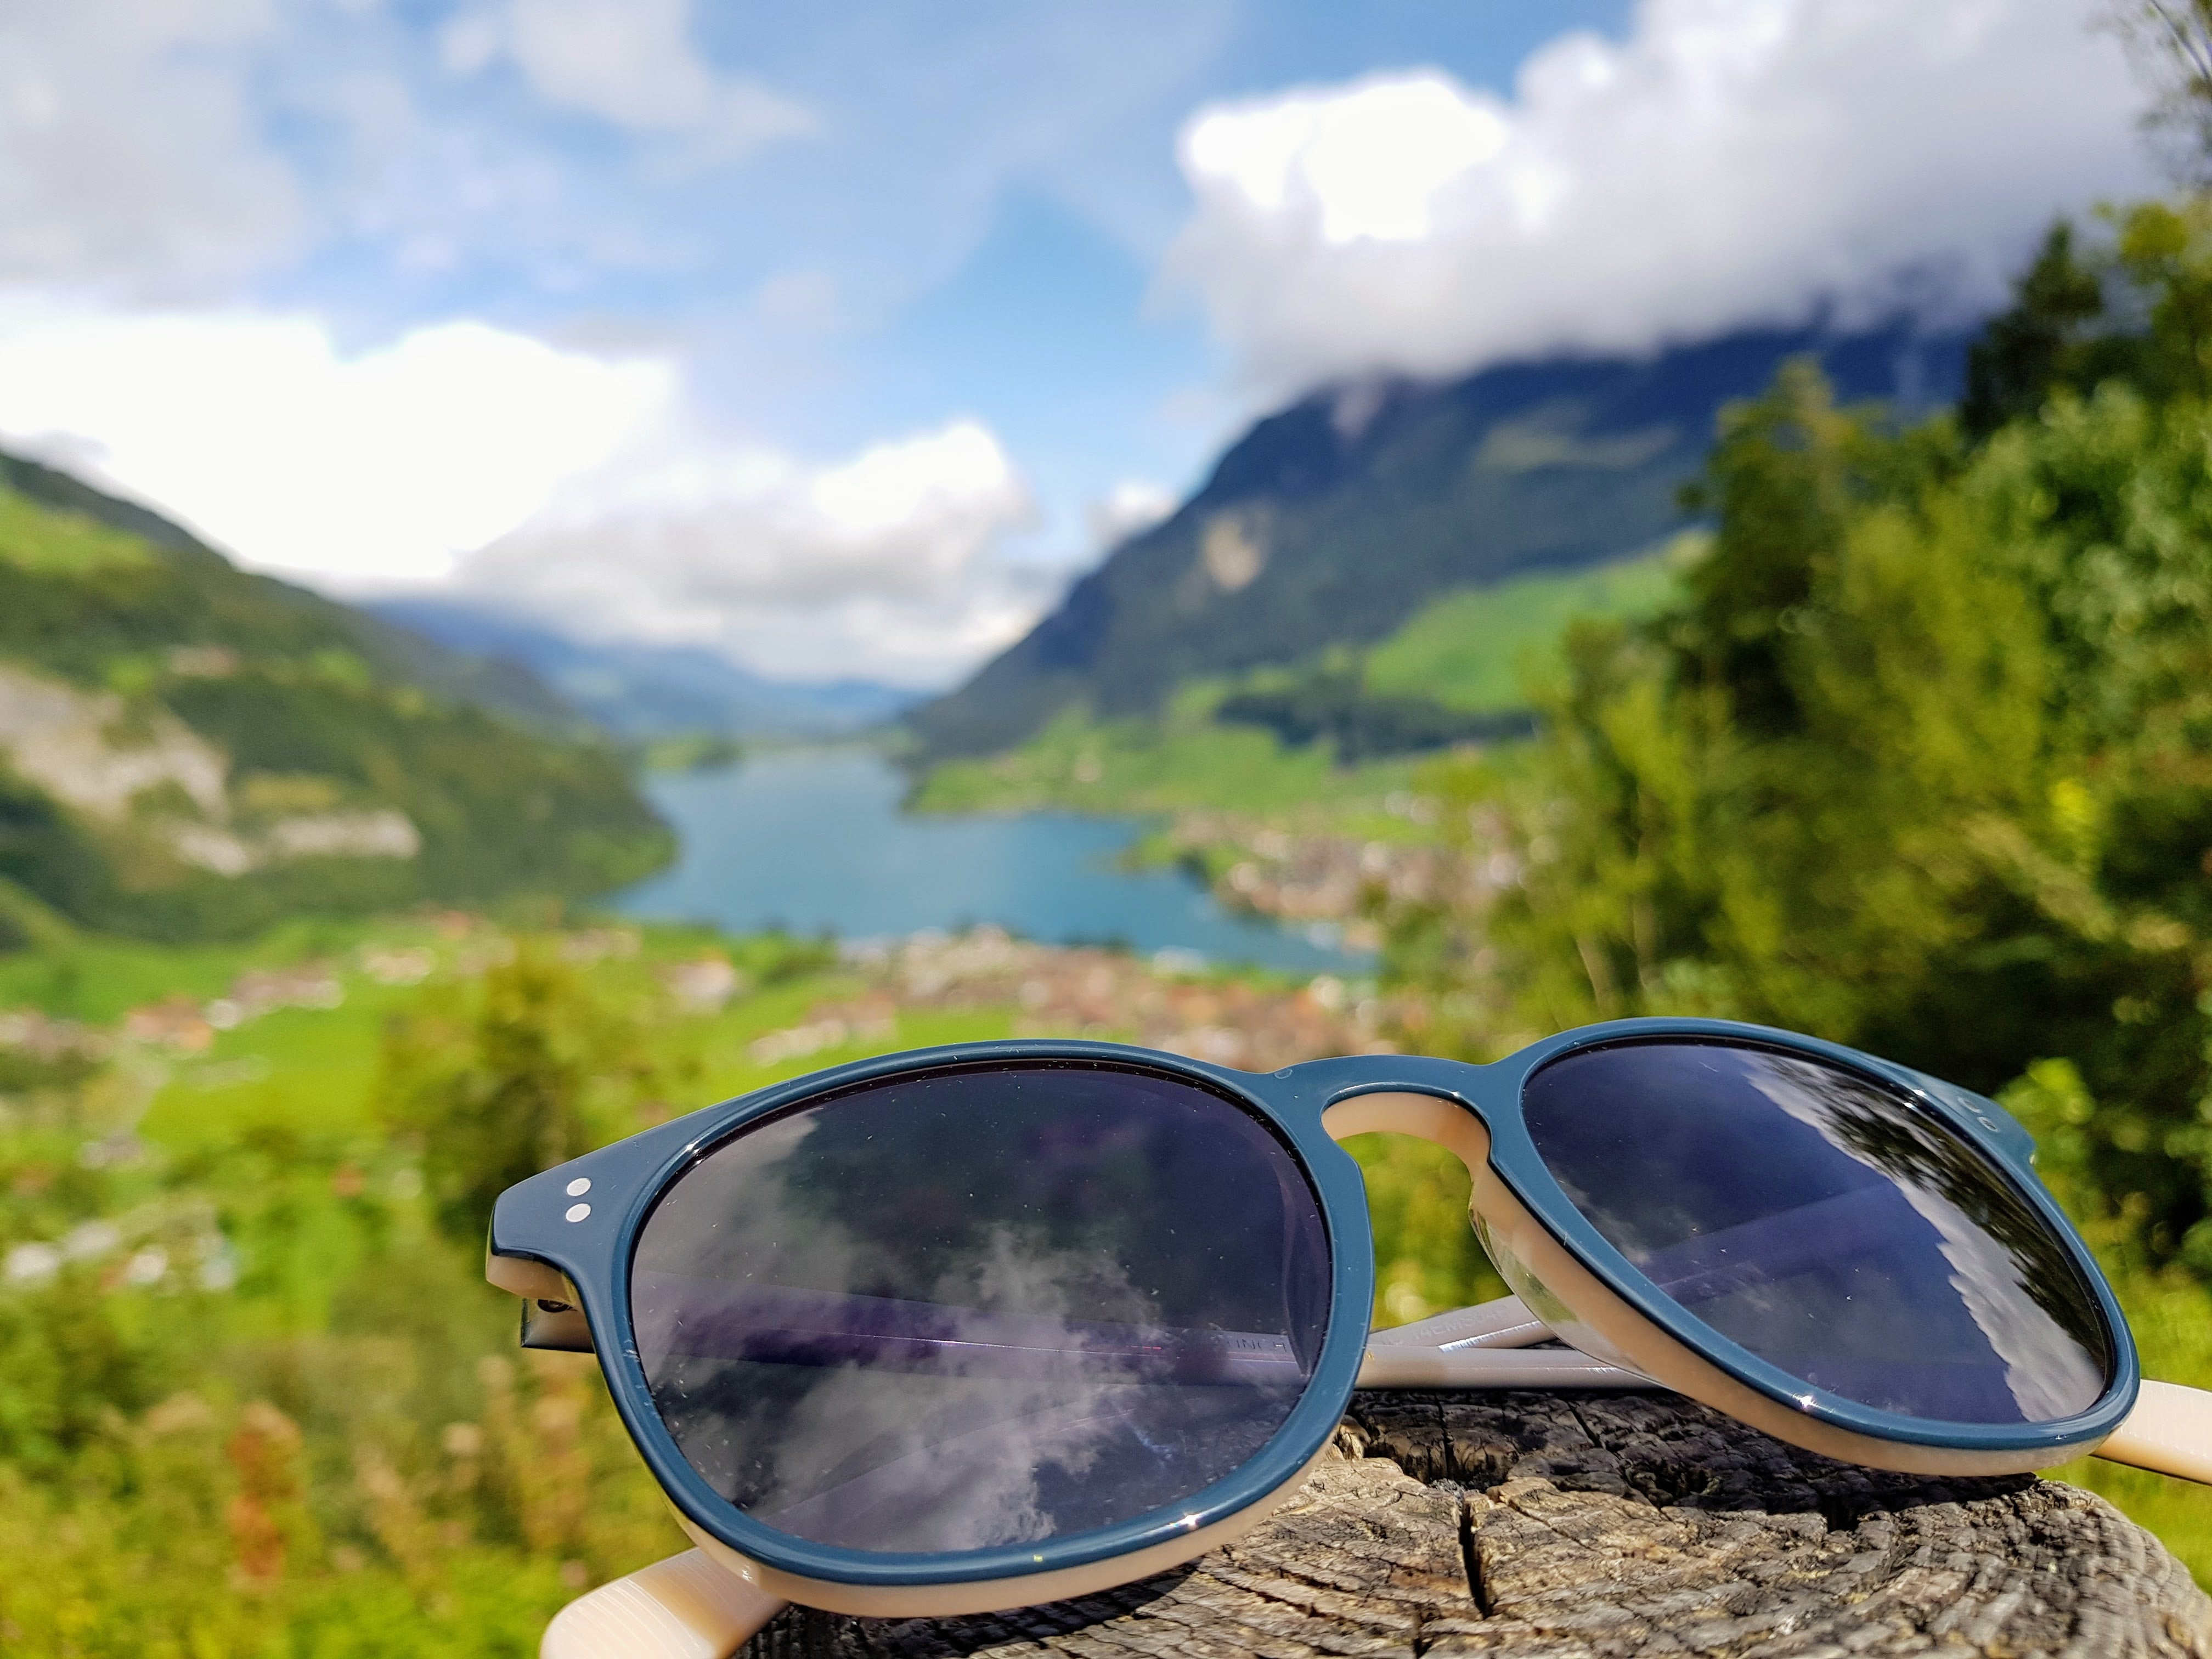 Lake Lungern, Switzerland with @alexanderwiguna